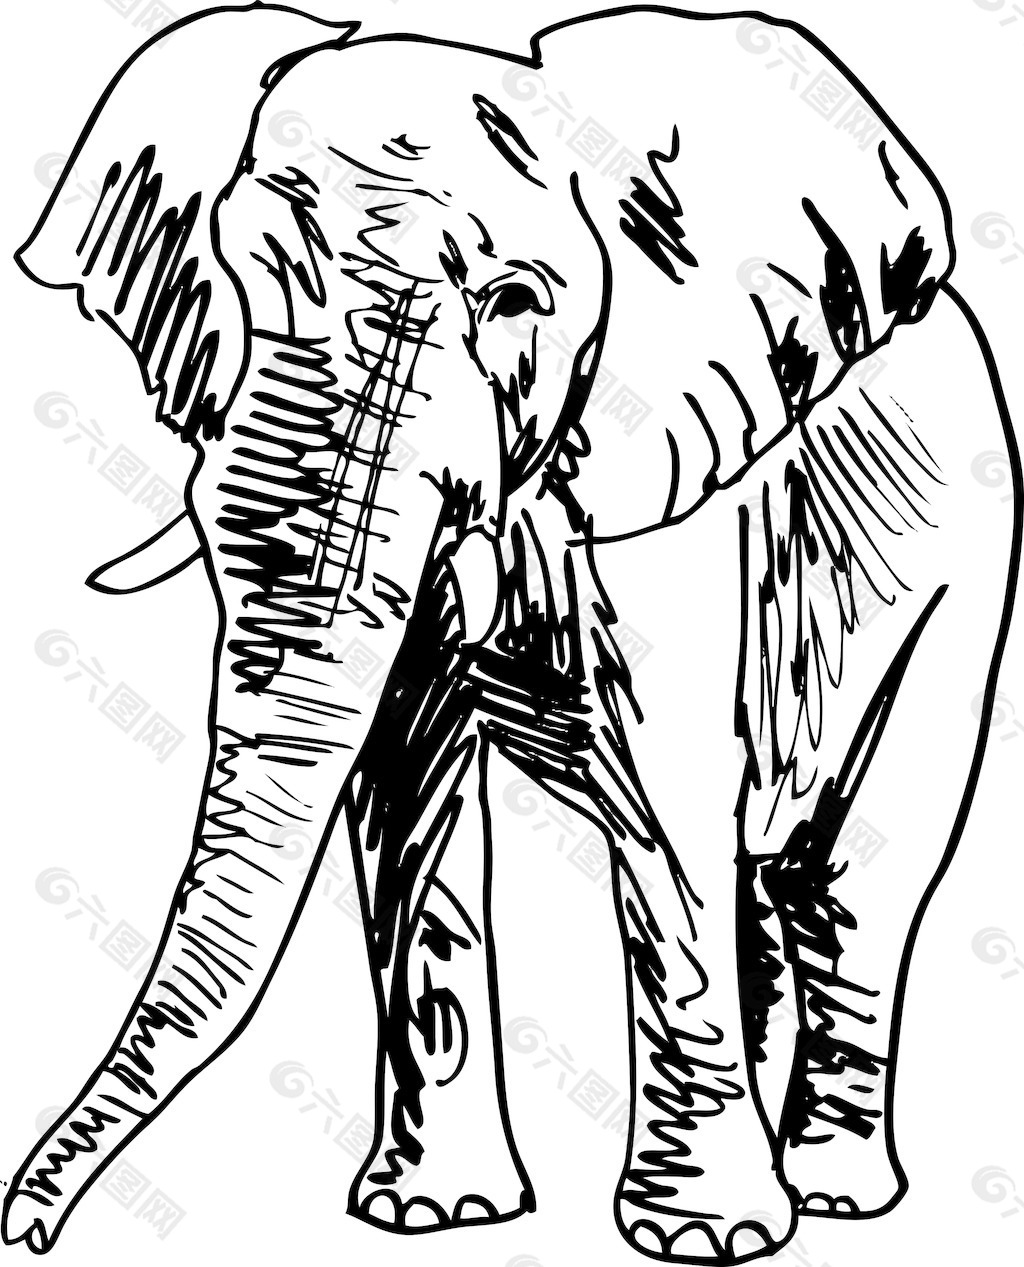 大象插画矢量图